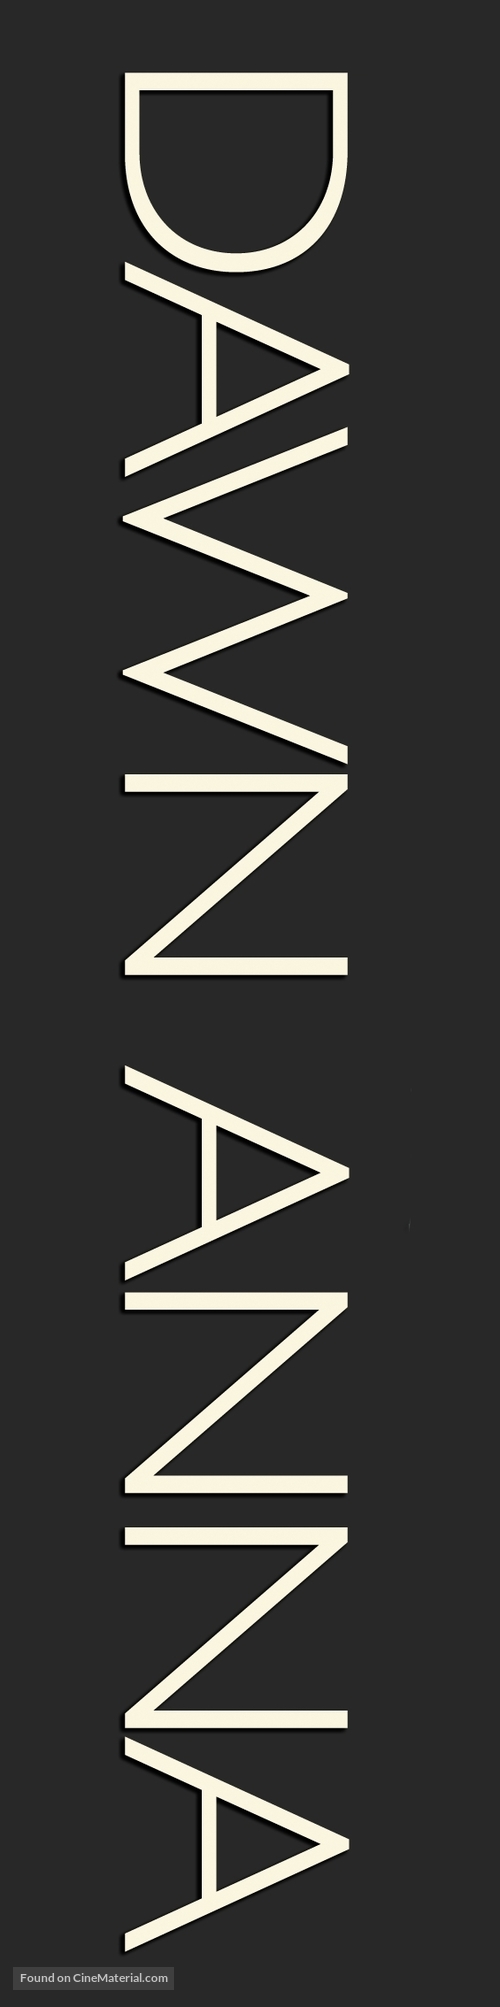 Dawn Anna - Logo